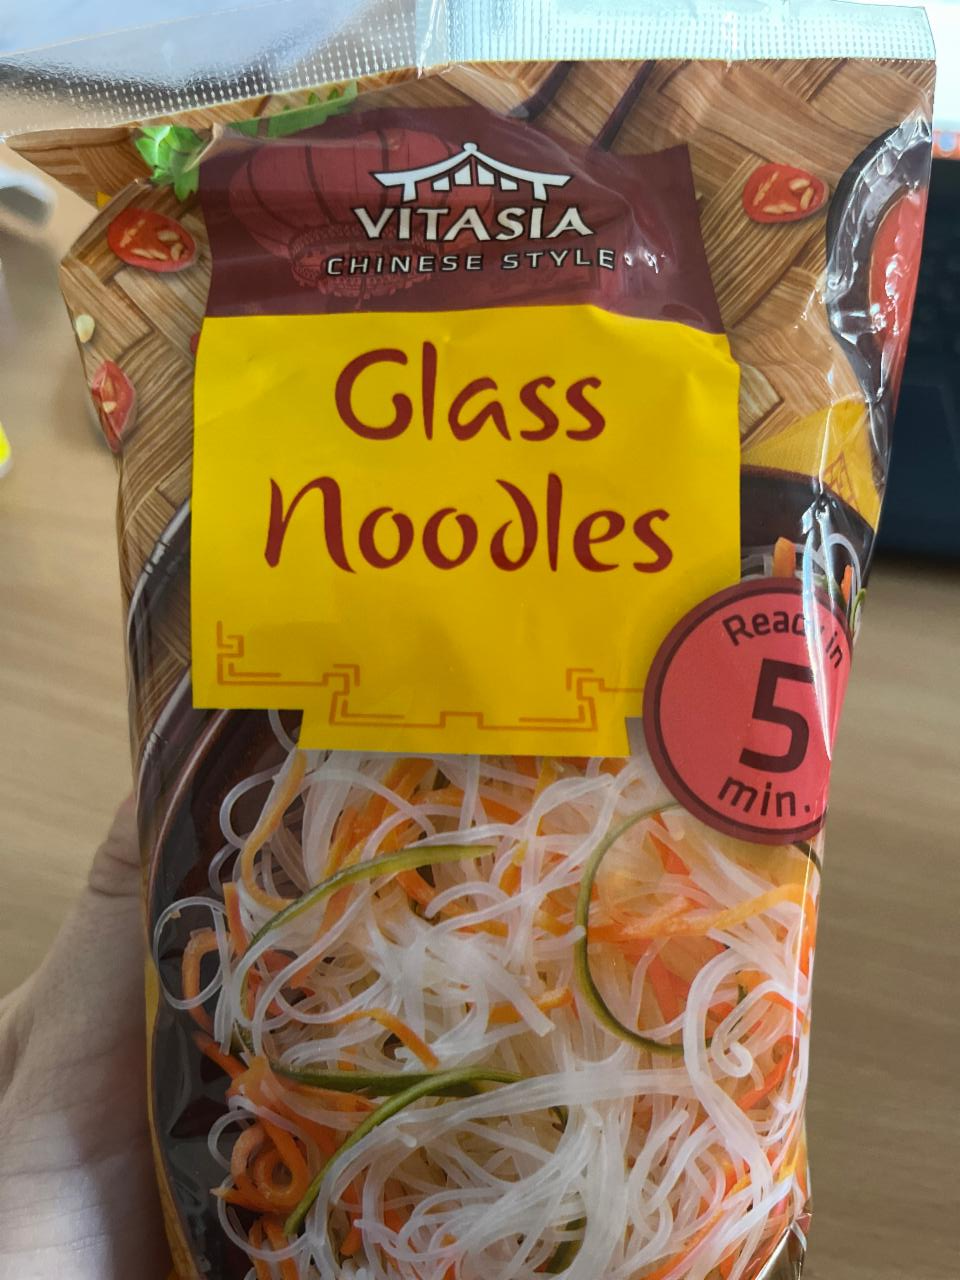 Фото - Стеклянная лапша Glass Noodles Vitasia